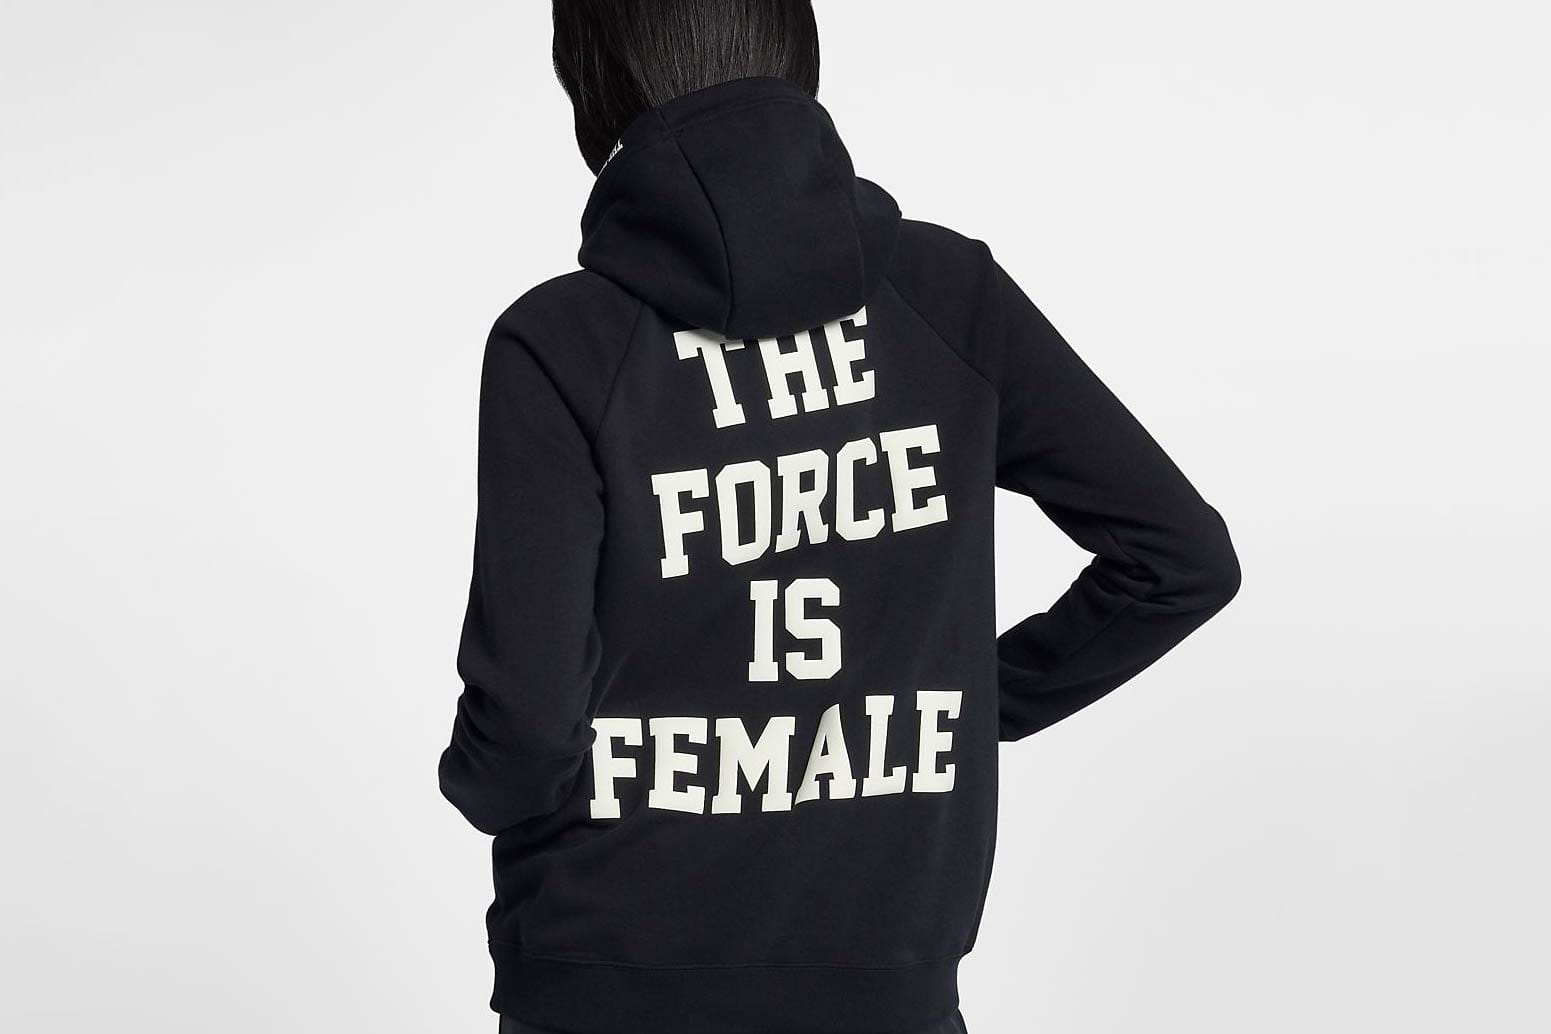 the force is female nike sweatshirt